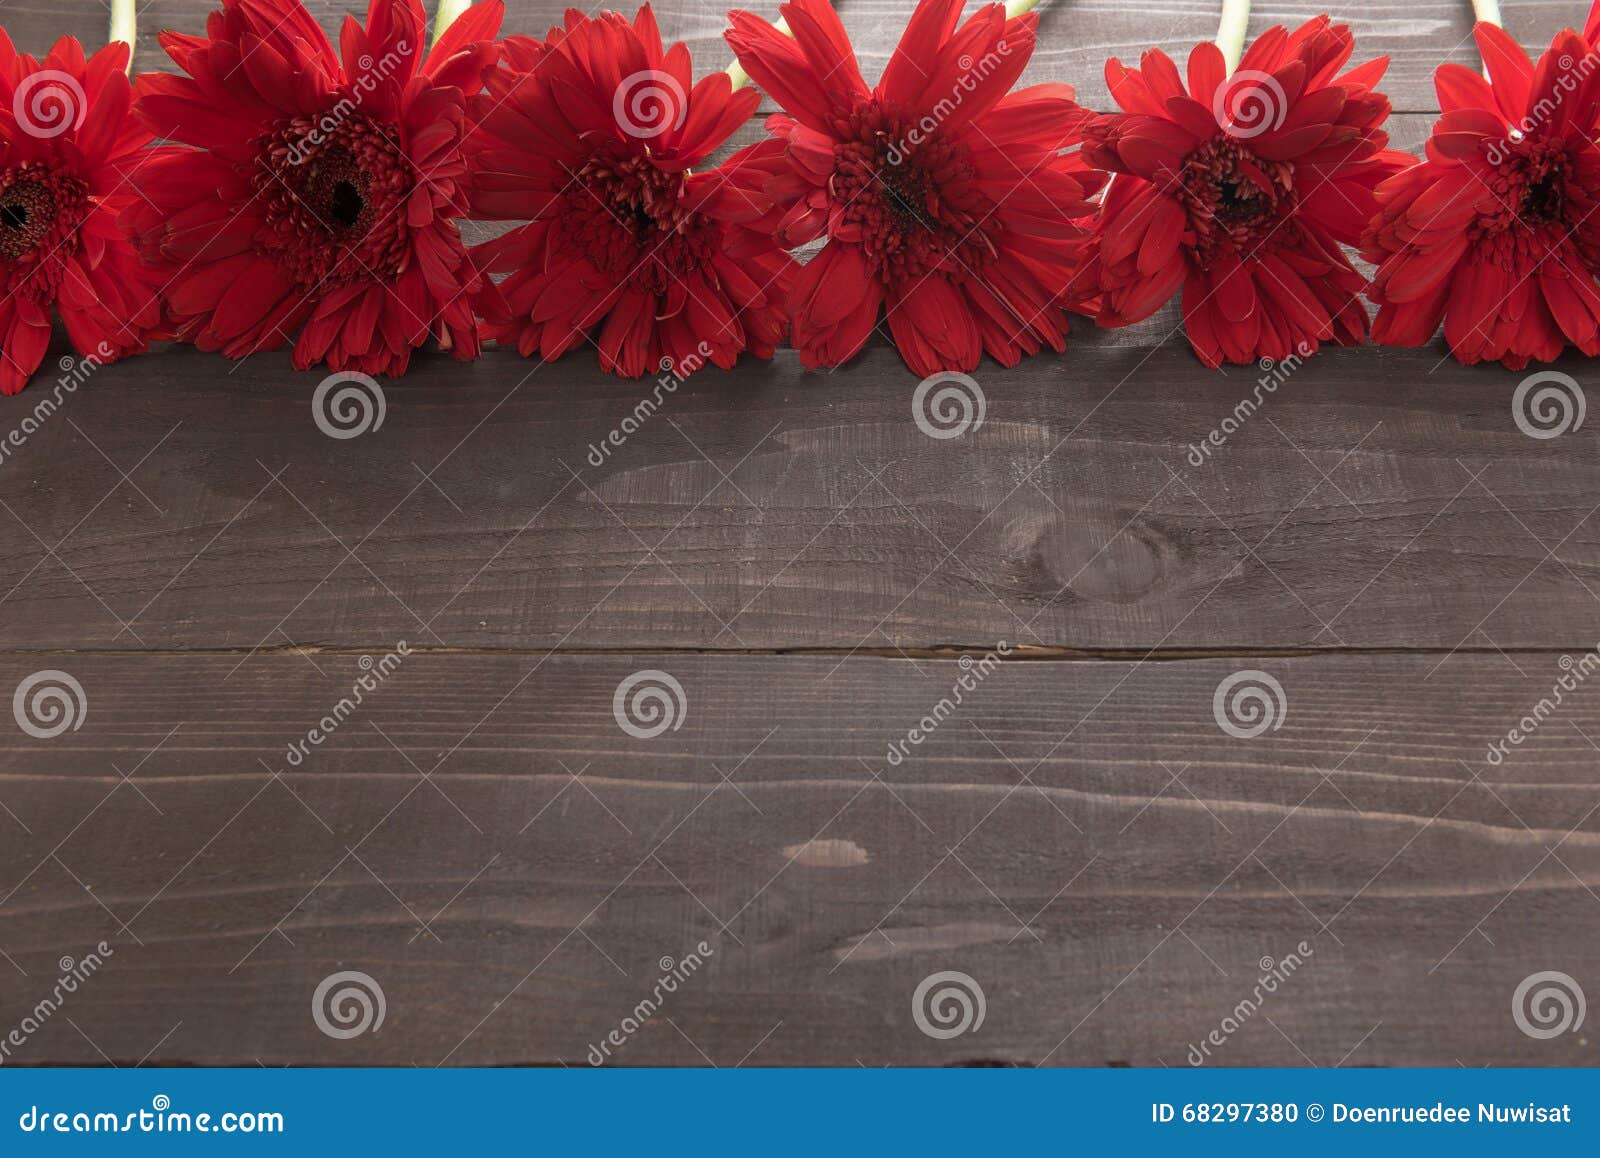 Las flores rojas del gerbera están en el fondo de madera